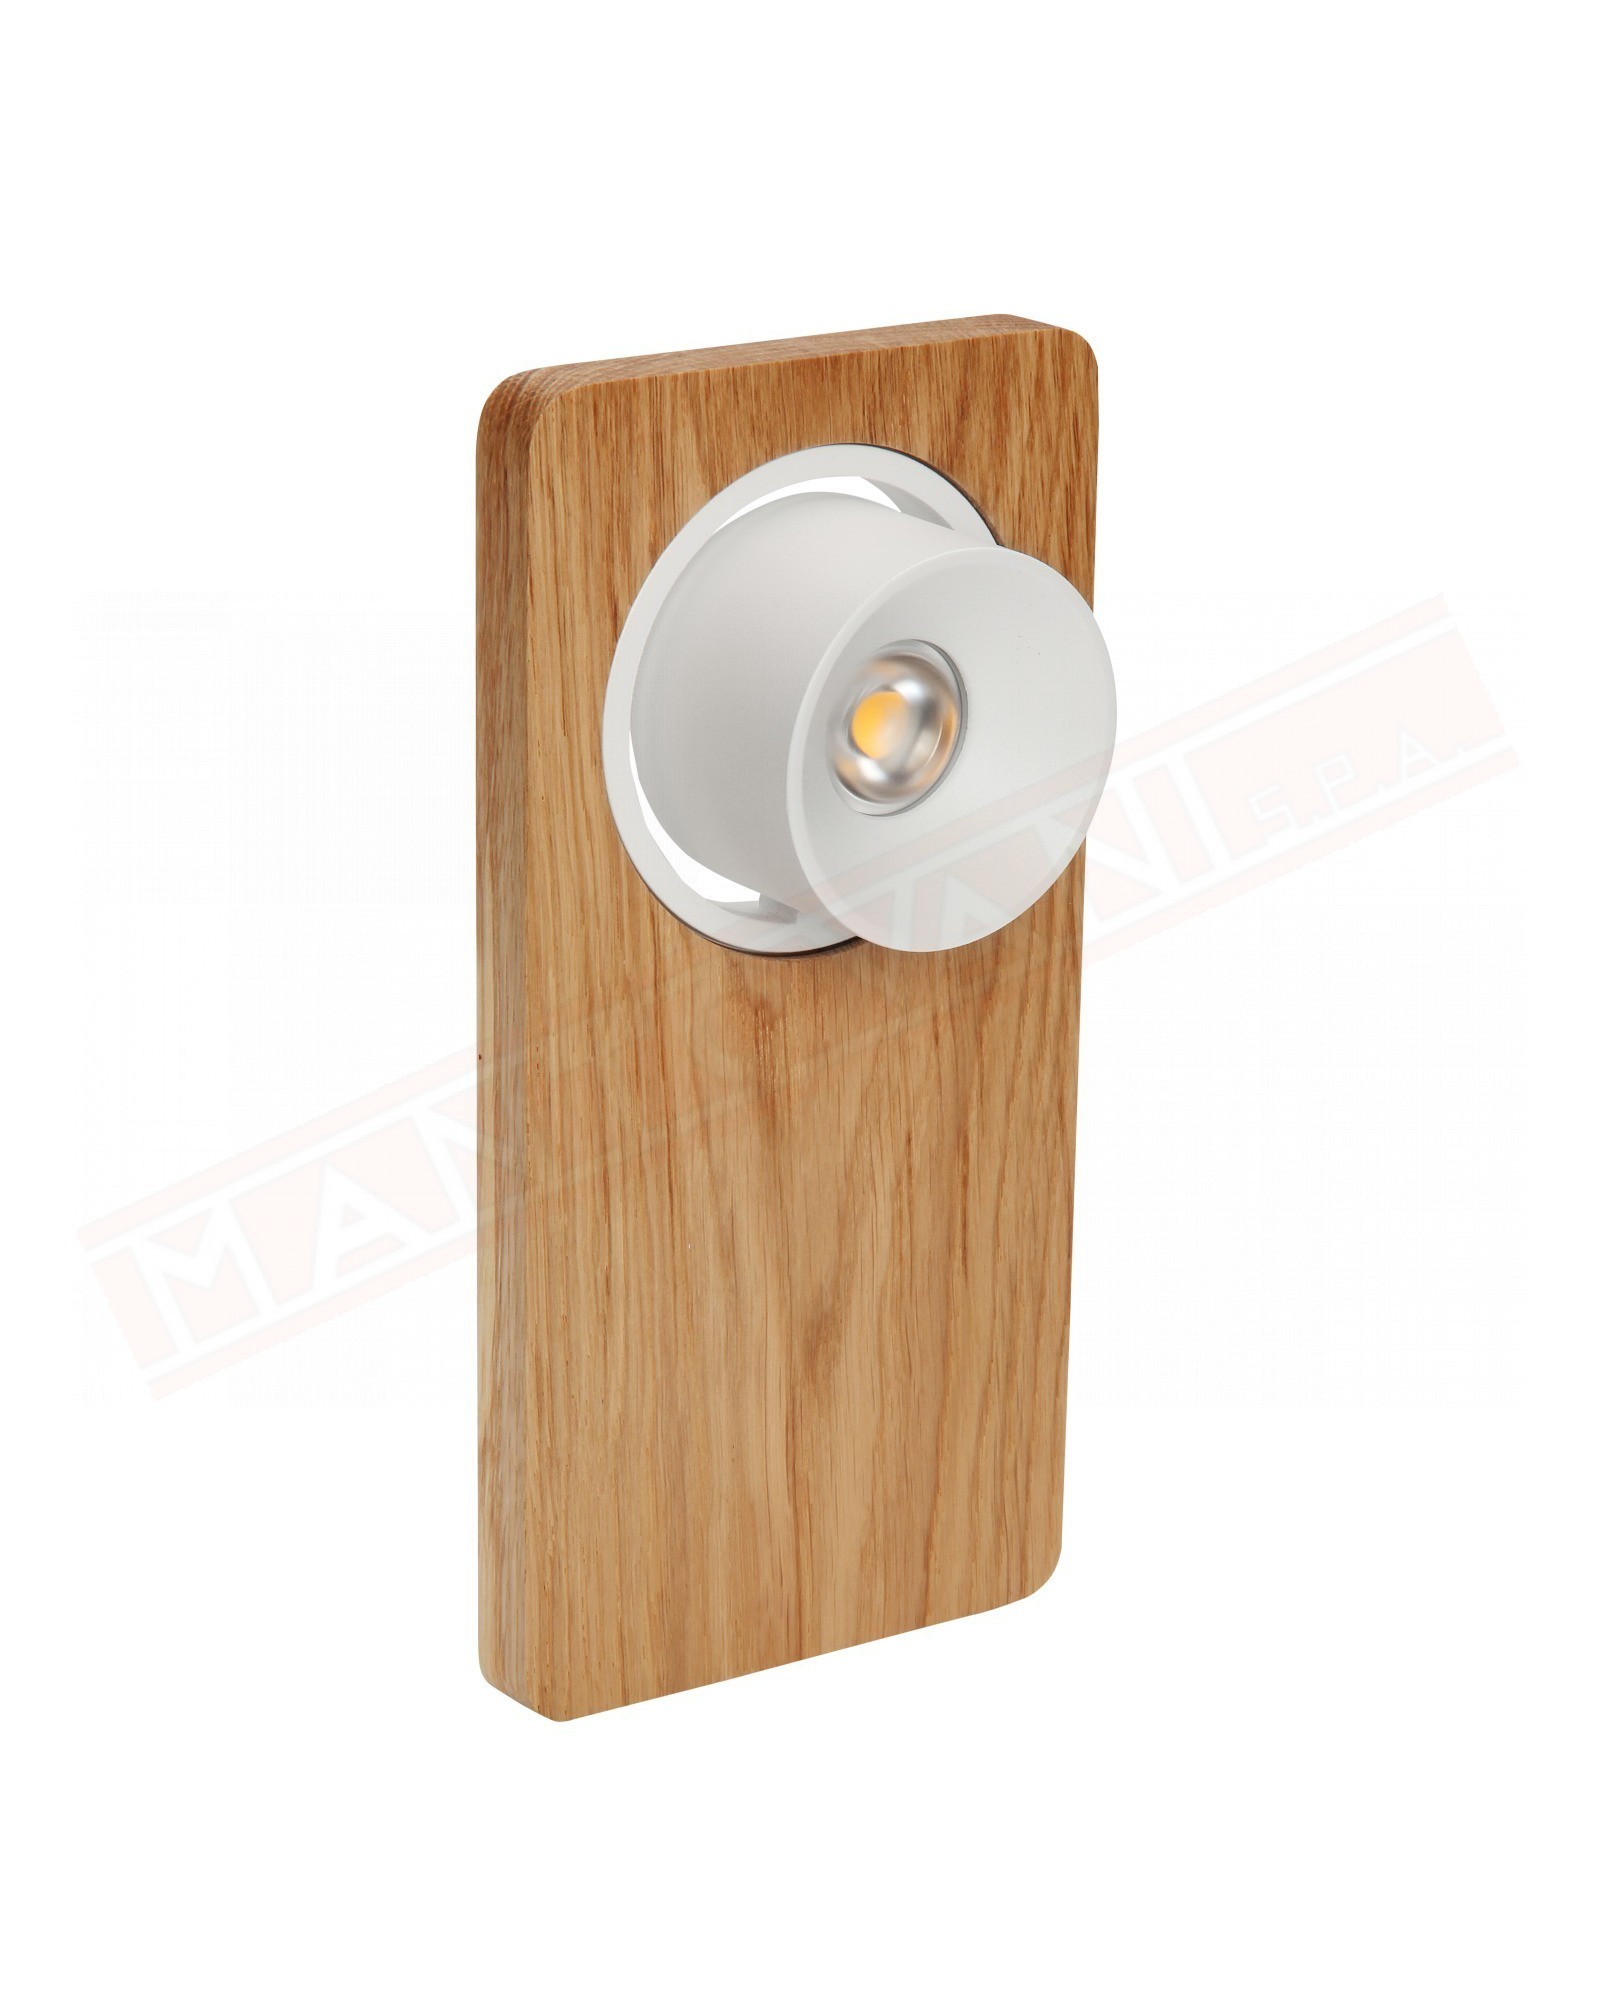 Linealight Beebo -W lampada a parete a led 220\240v legno rovere